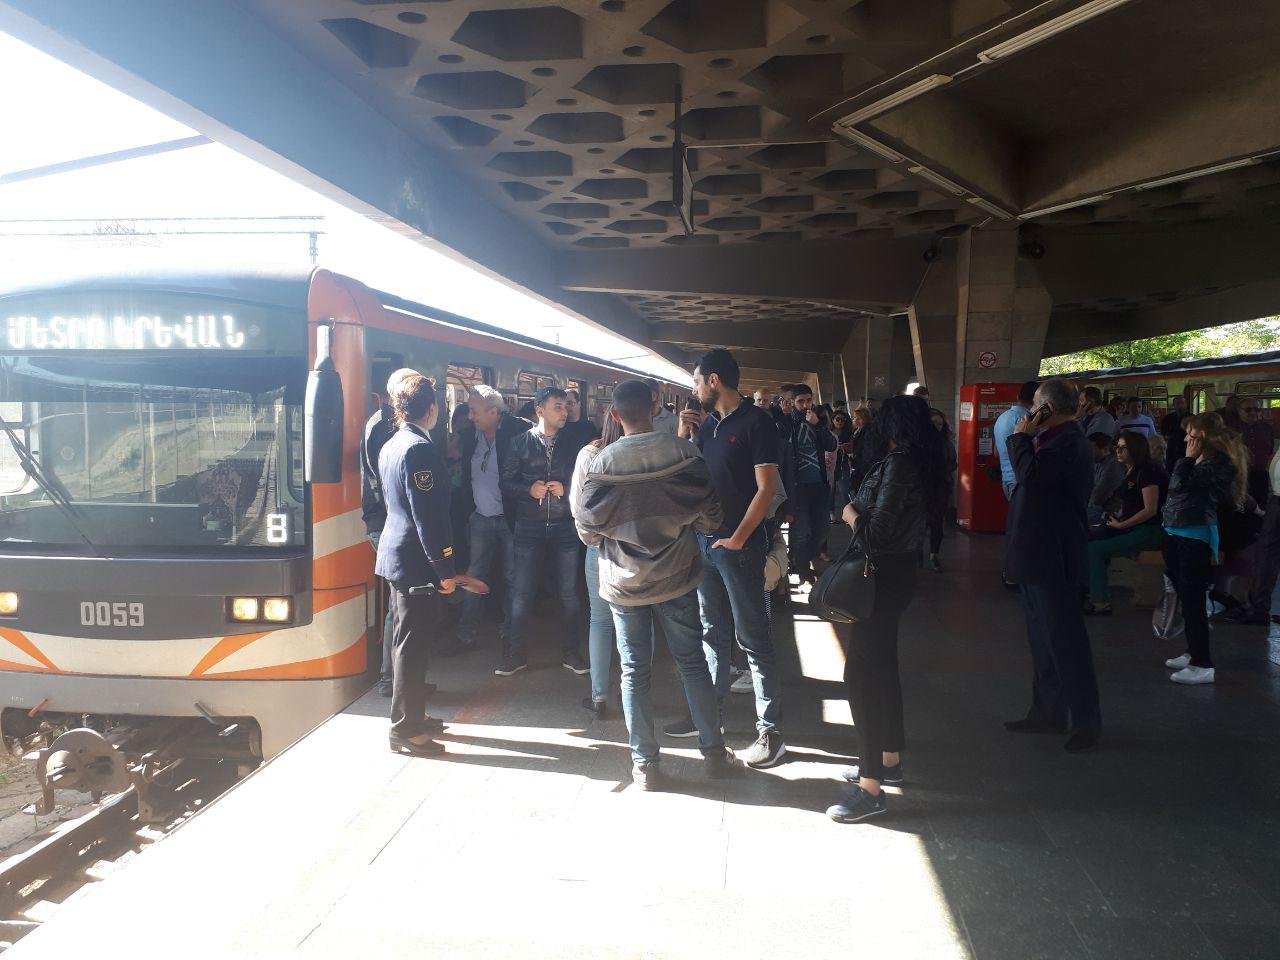 У Єревані протестувальники заблокували метро (ФОТО, ВІДЕО)